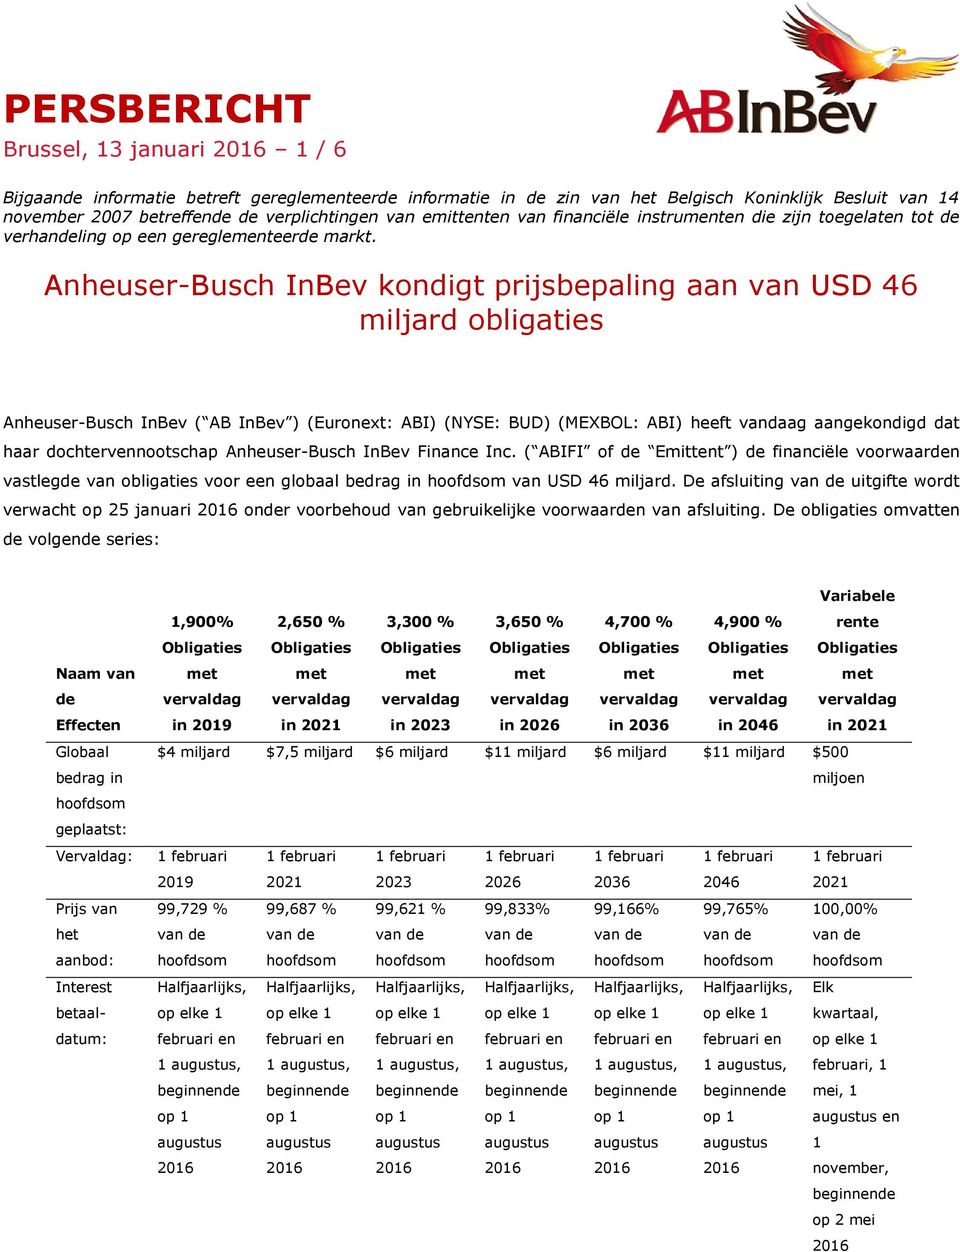 Anheuser-Busch InBev kondigt prijsbepaling van USD 46 miljard obligaties Anheuser-Busch InBev ( AB InBev ) (Euronext: ABI) (NYSE: BUD) (MEXBOL: ABI) heeft vandaag gekondigd dat haar